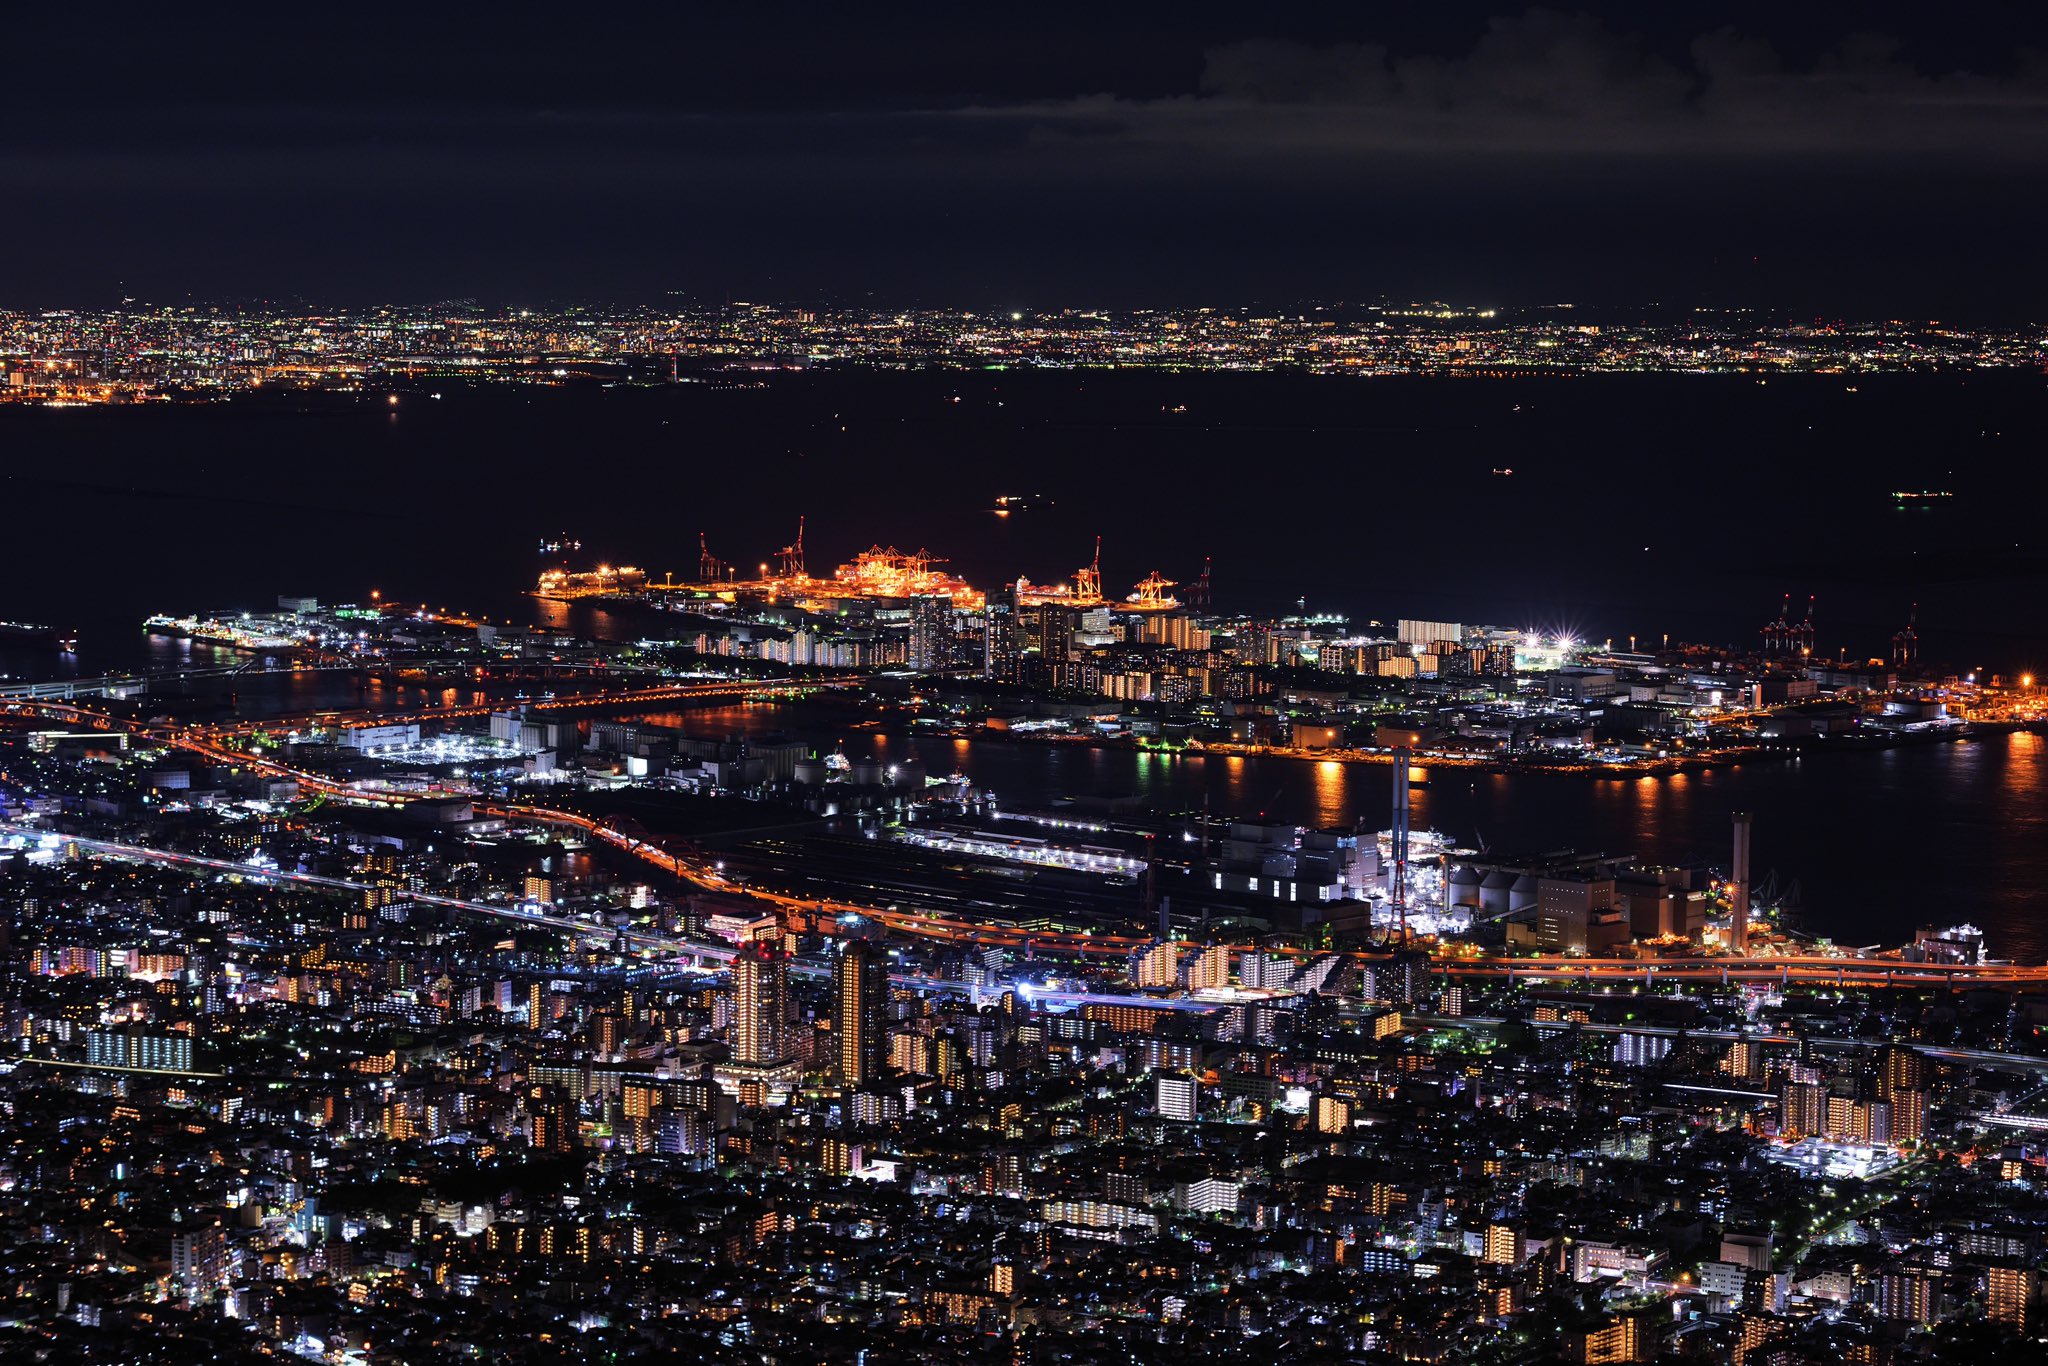 神戸市広報 今週もお疲れさまでした みなさんの好きな景色はなんですか もし 夜景 であれば いちど神戸に足を運んでみませんか 無数の輝きがあなたを待っています 神戸夜景が綺麗ですね 掬星台 T Co T6rvtvgsme Twitter